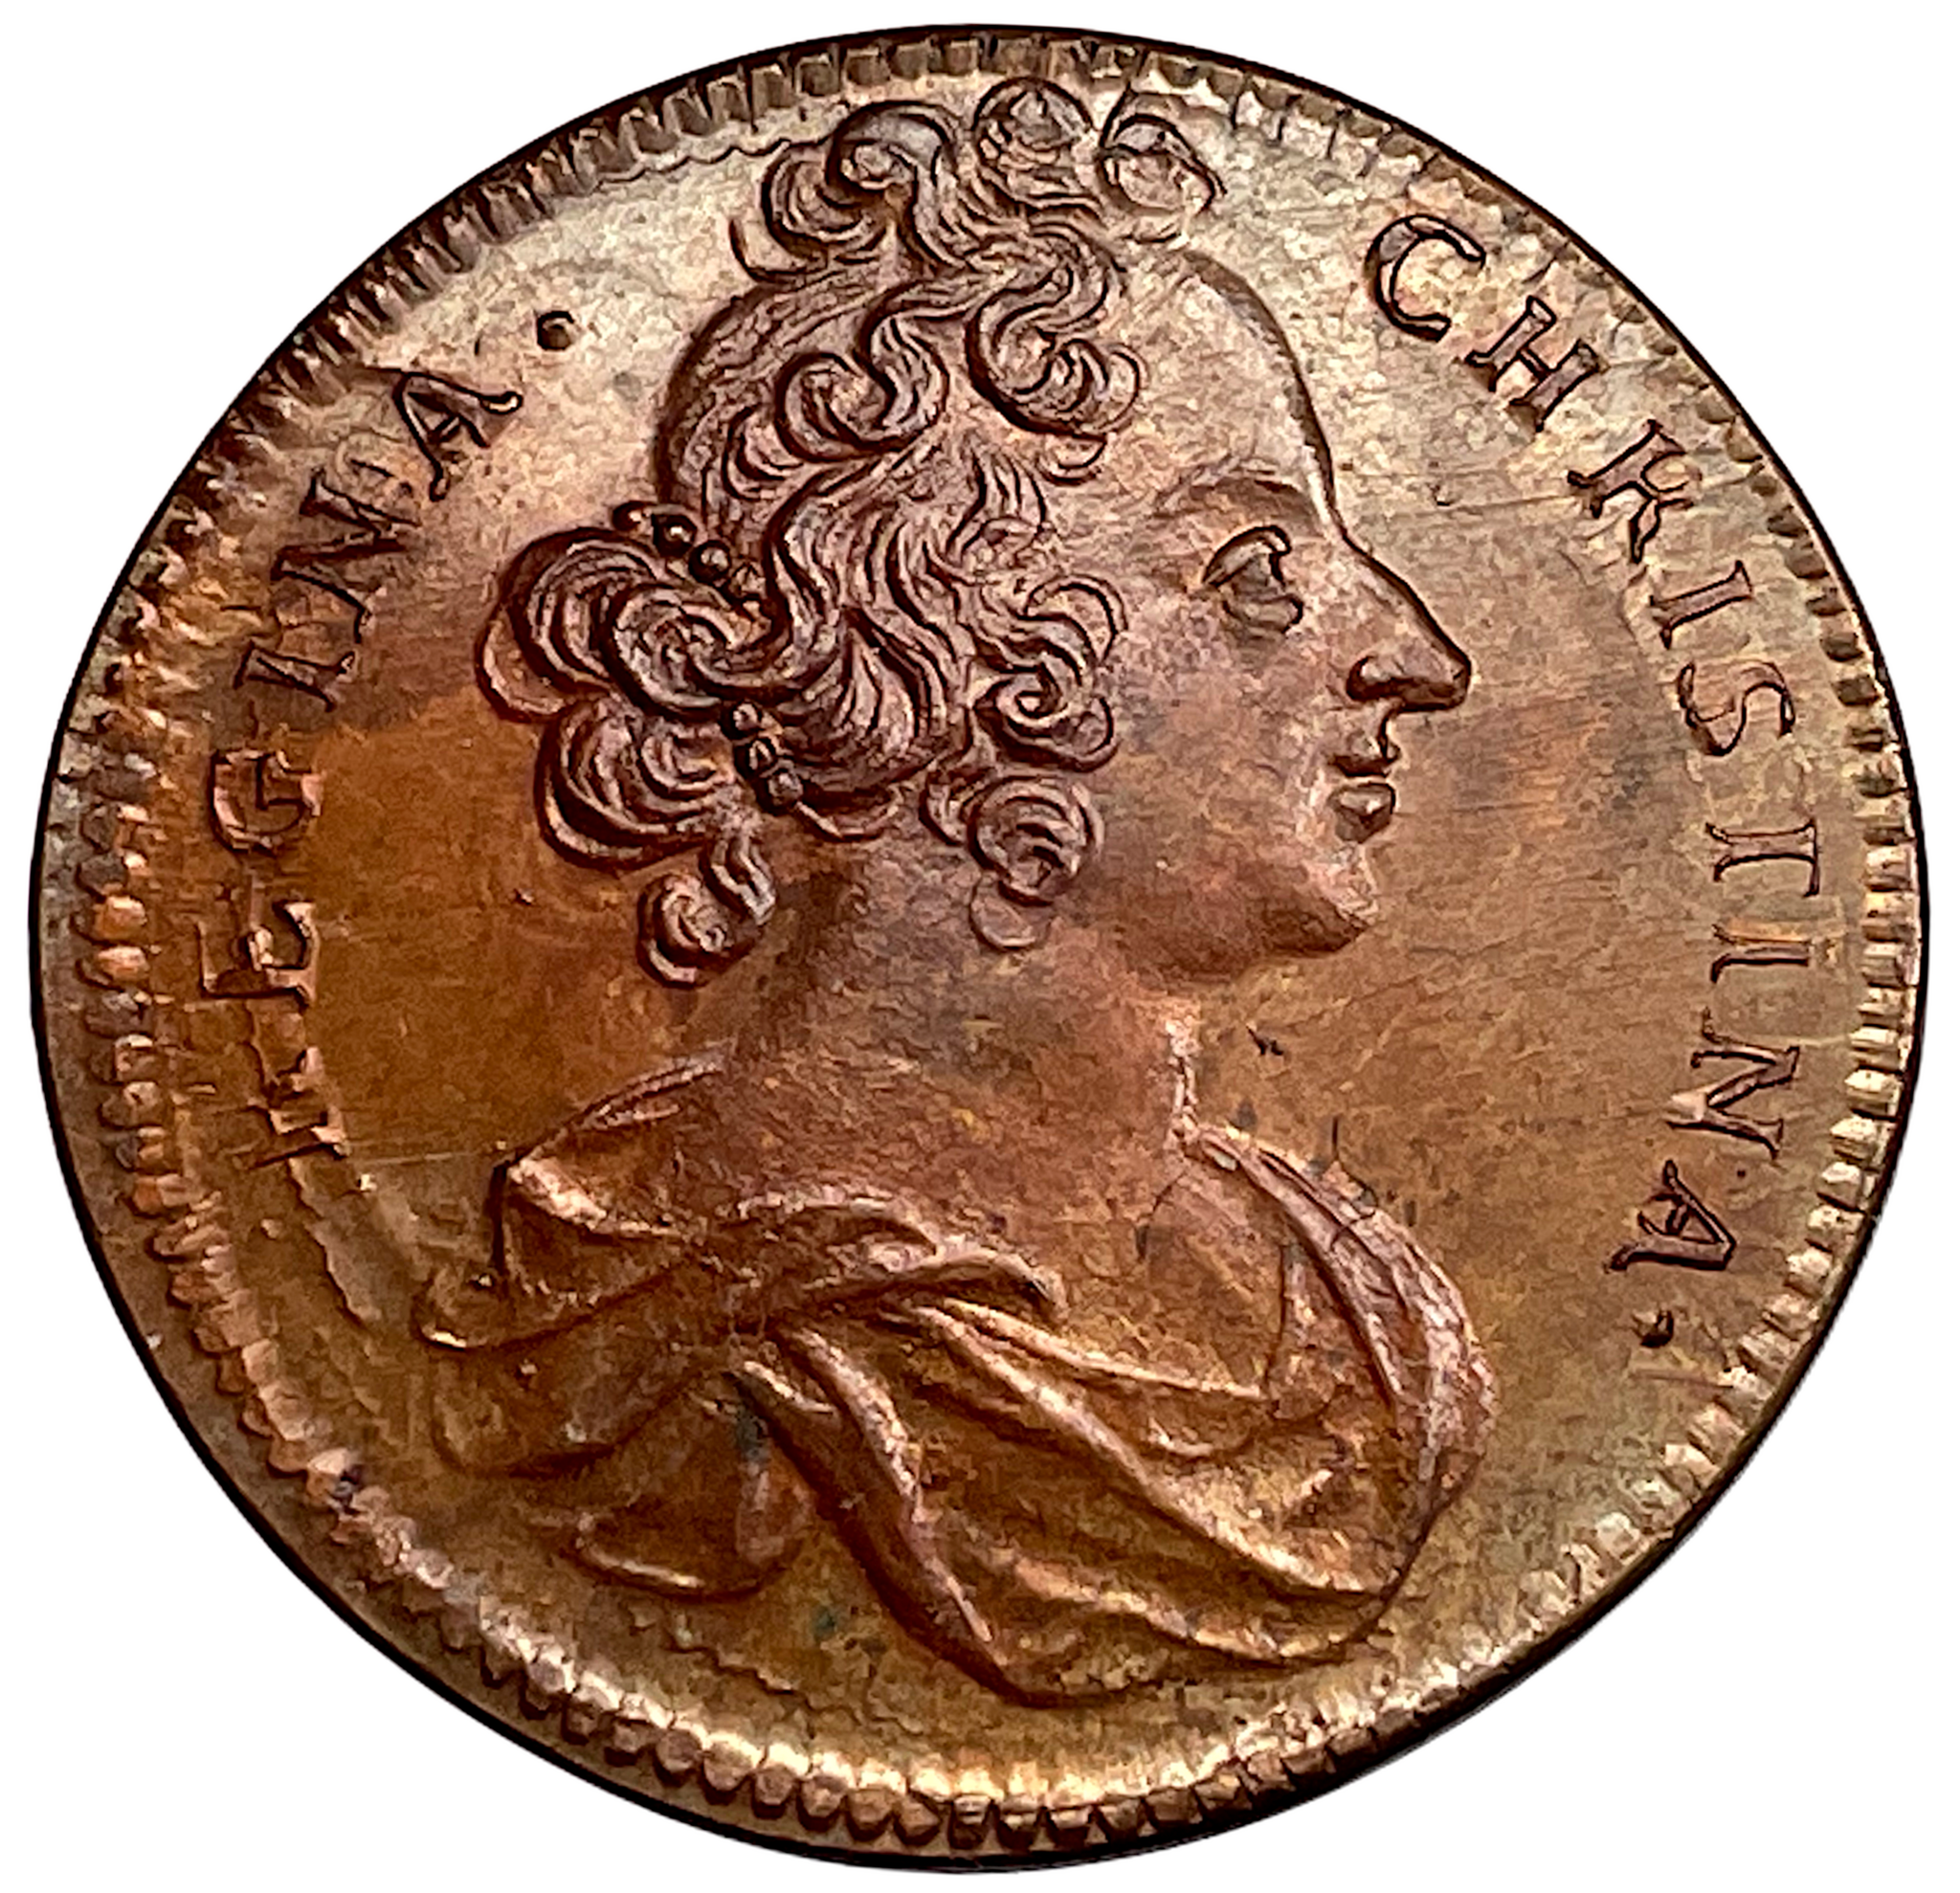 Drottningen Kristinas kröning 20 oktober 1650 - Karlsteens 2:a regentlängd